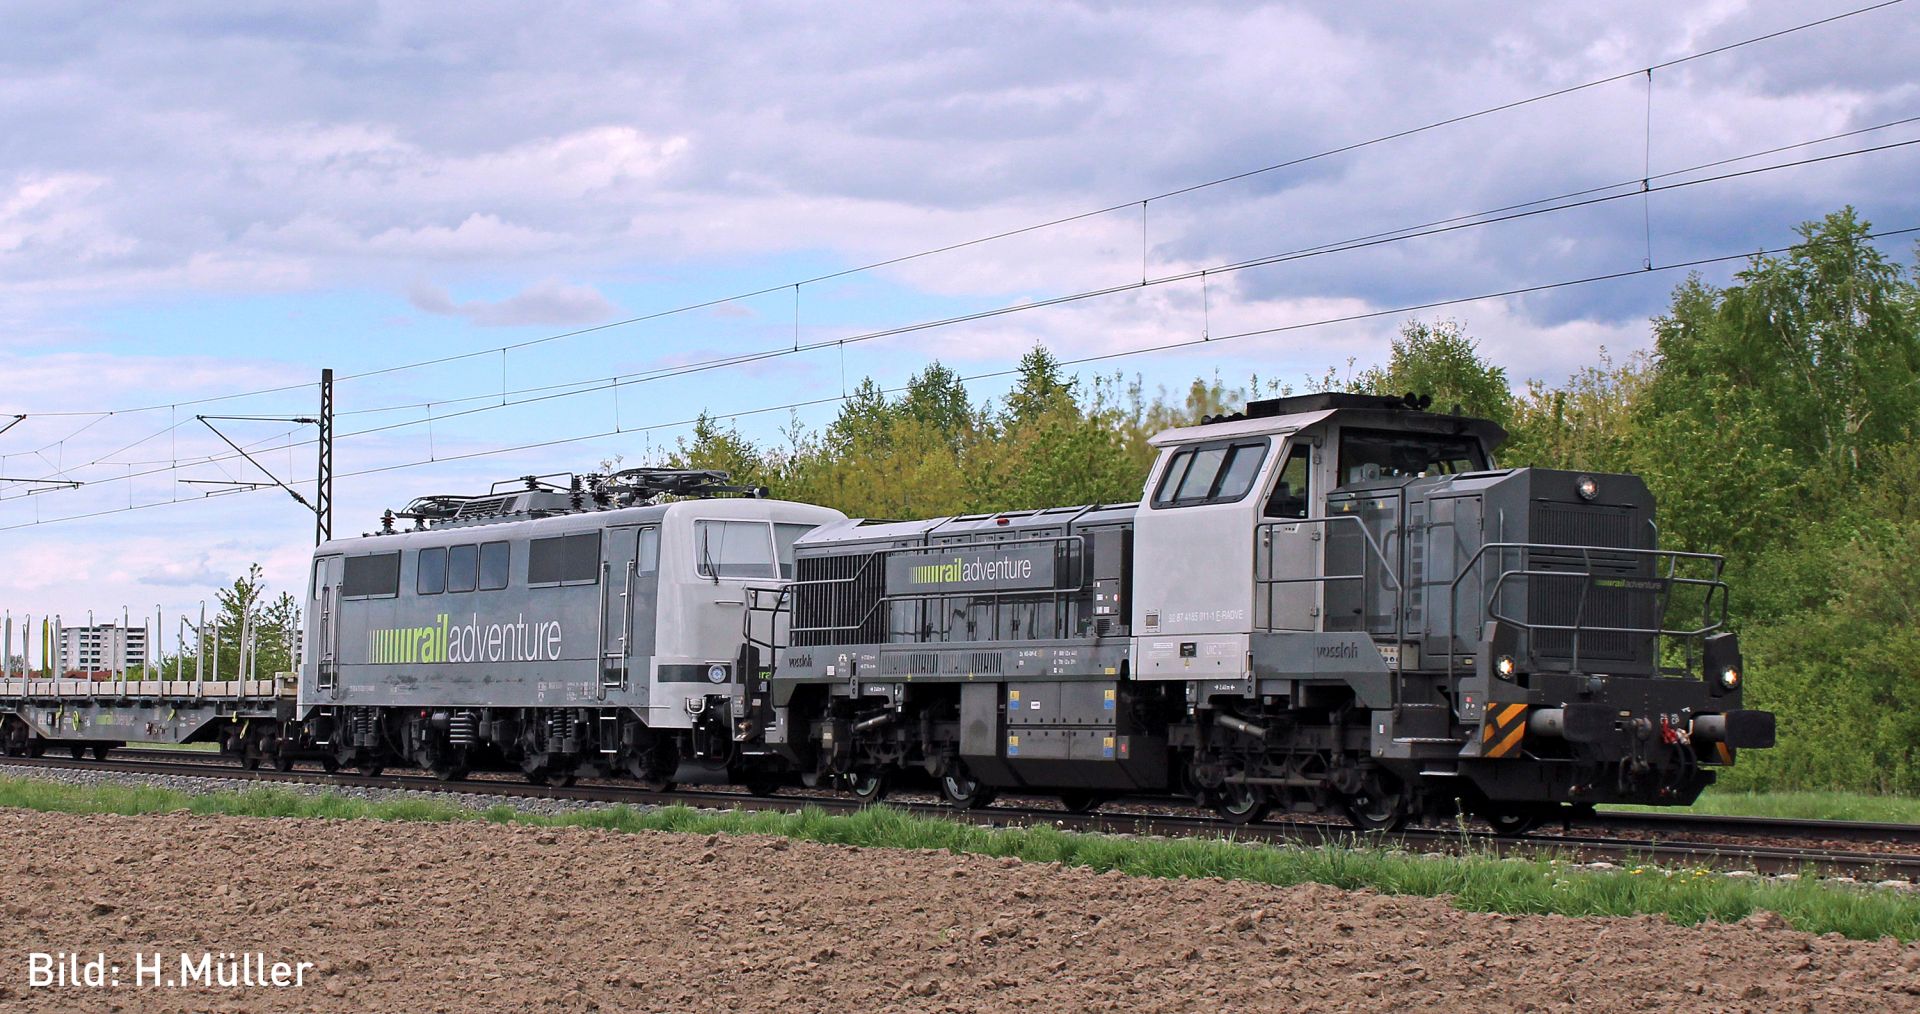 Hobbytrain H32103-S - Diesellok Vossloh DE18, Railadventure, Ep.VI, DC-Sound